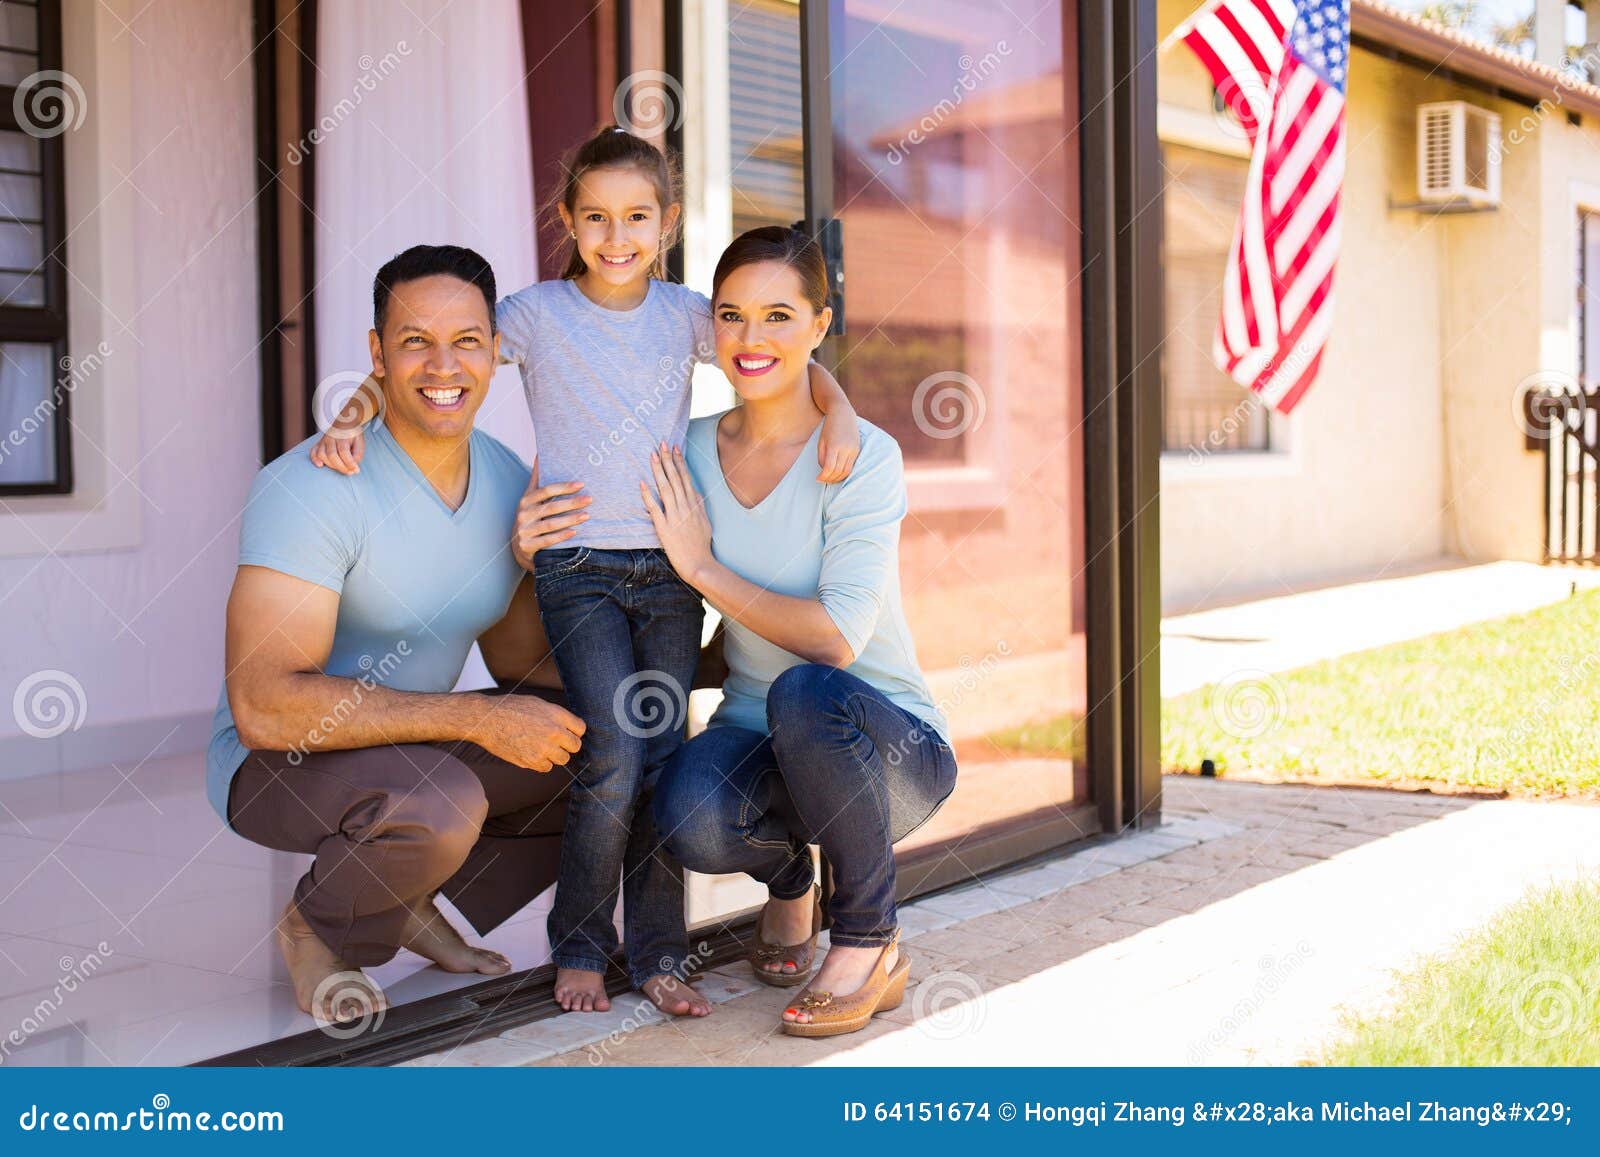 Семья капустиных америка. Семья США. Типичная американская семья. Счастливая семья Америка. Американские родители.